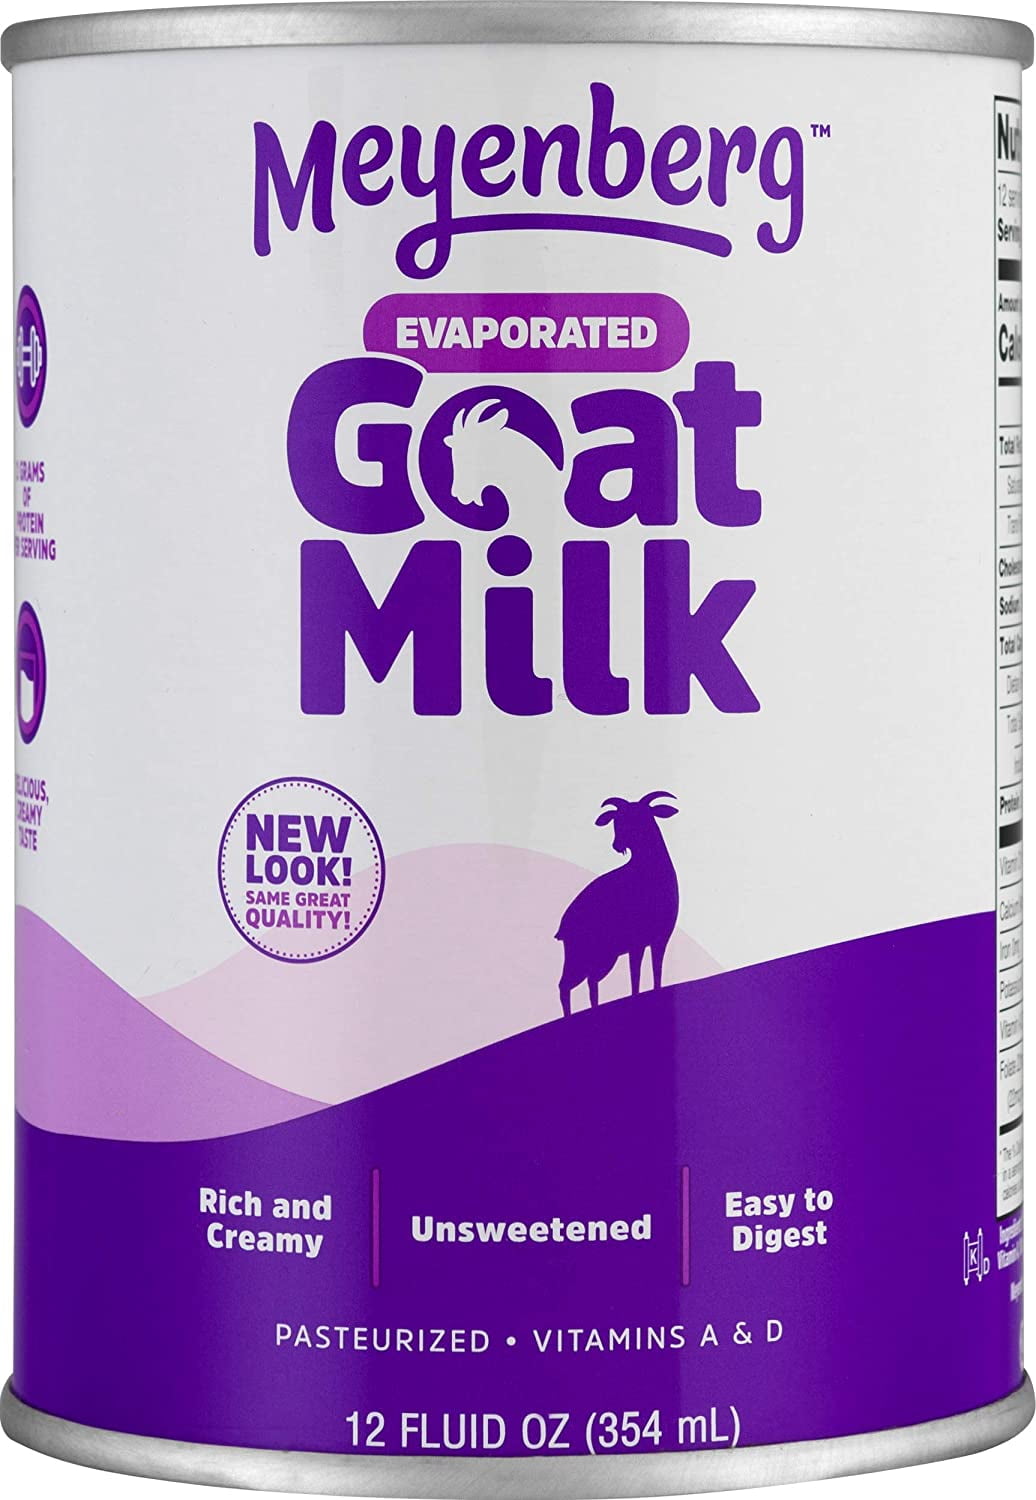 Meyenberg Evaporated Goat Milk- 12 Fl oz.